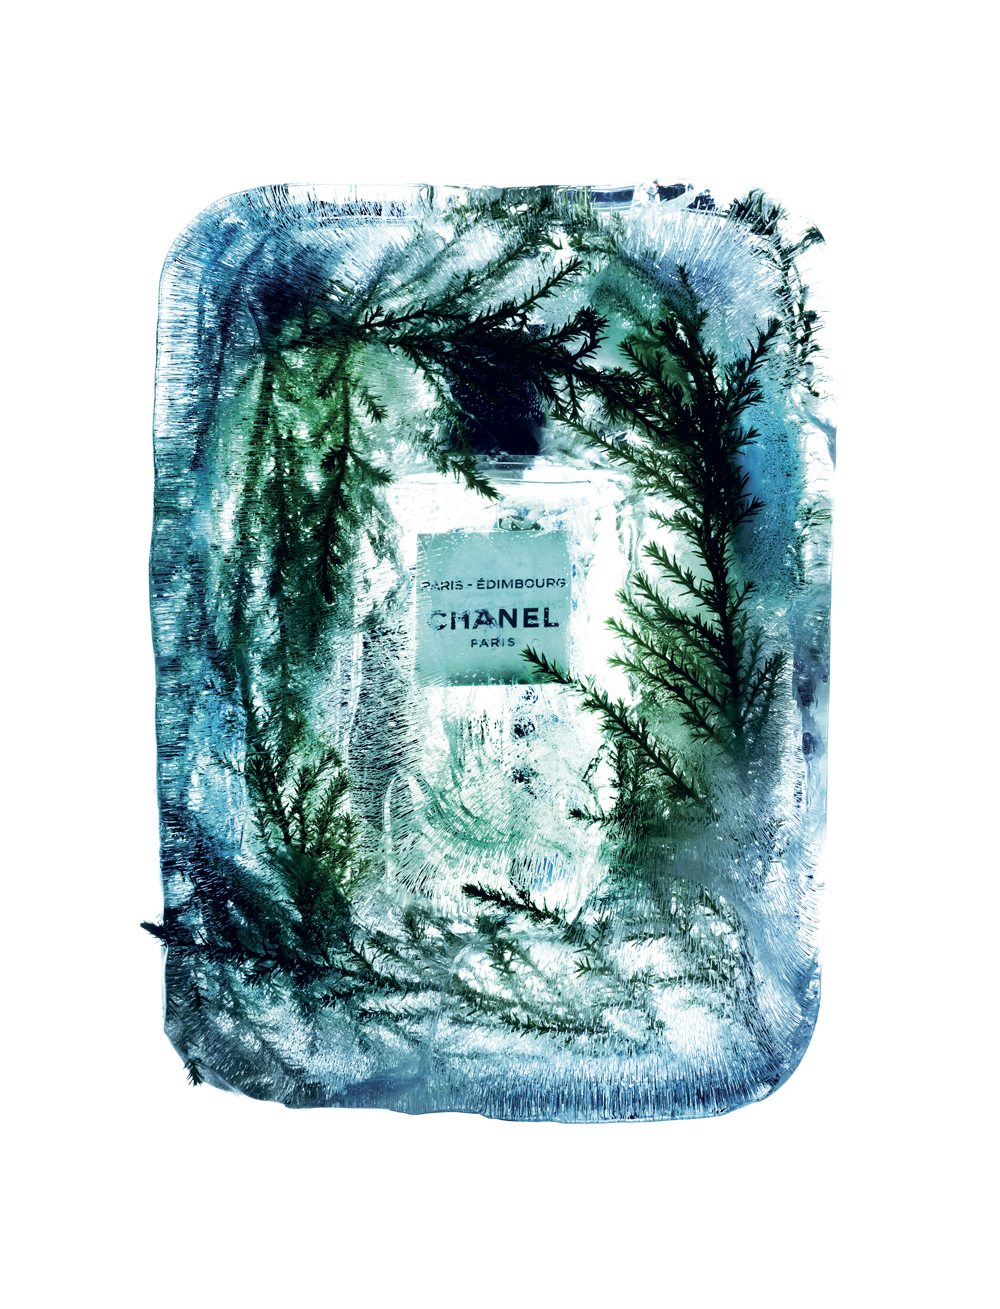 “Paris-Edimbourg”, eau de toilette, collection Les Eaux de Chanel, CHANEL.